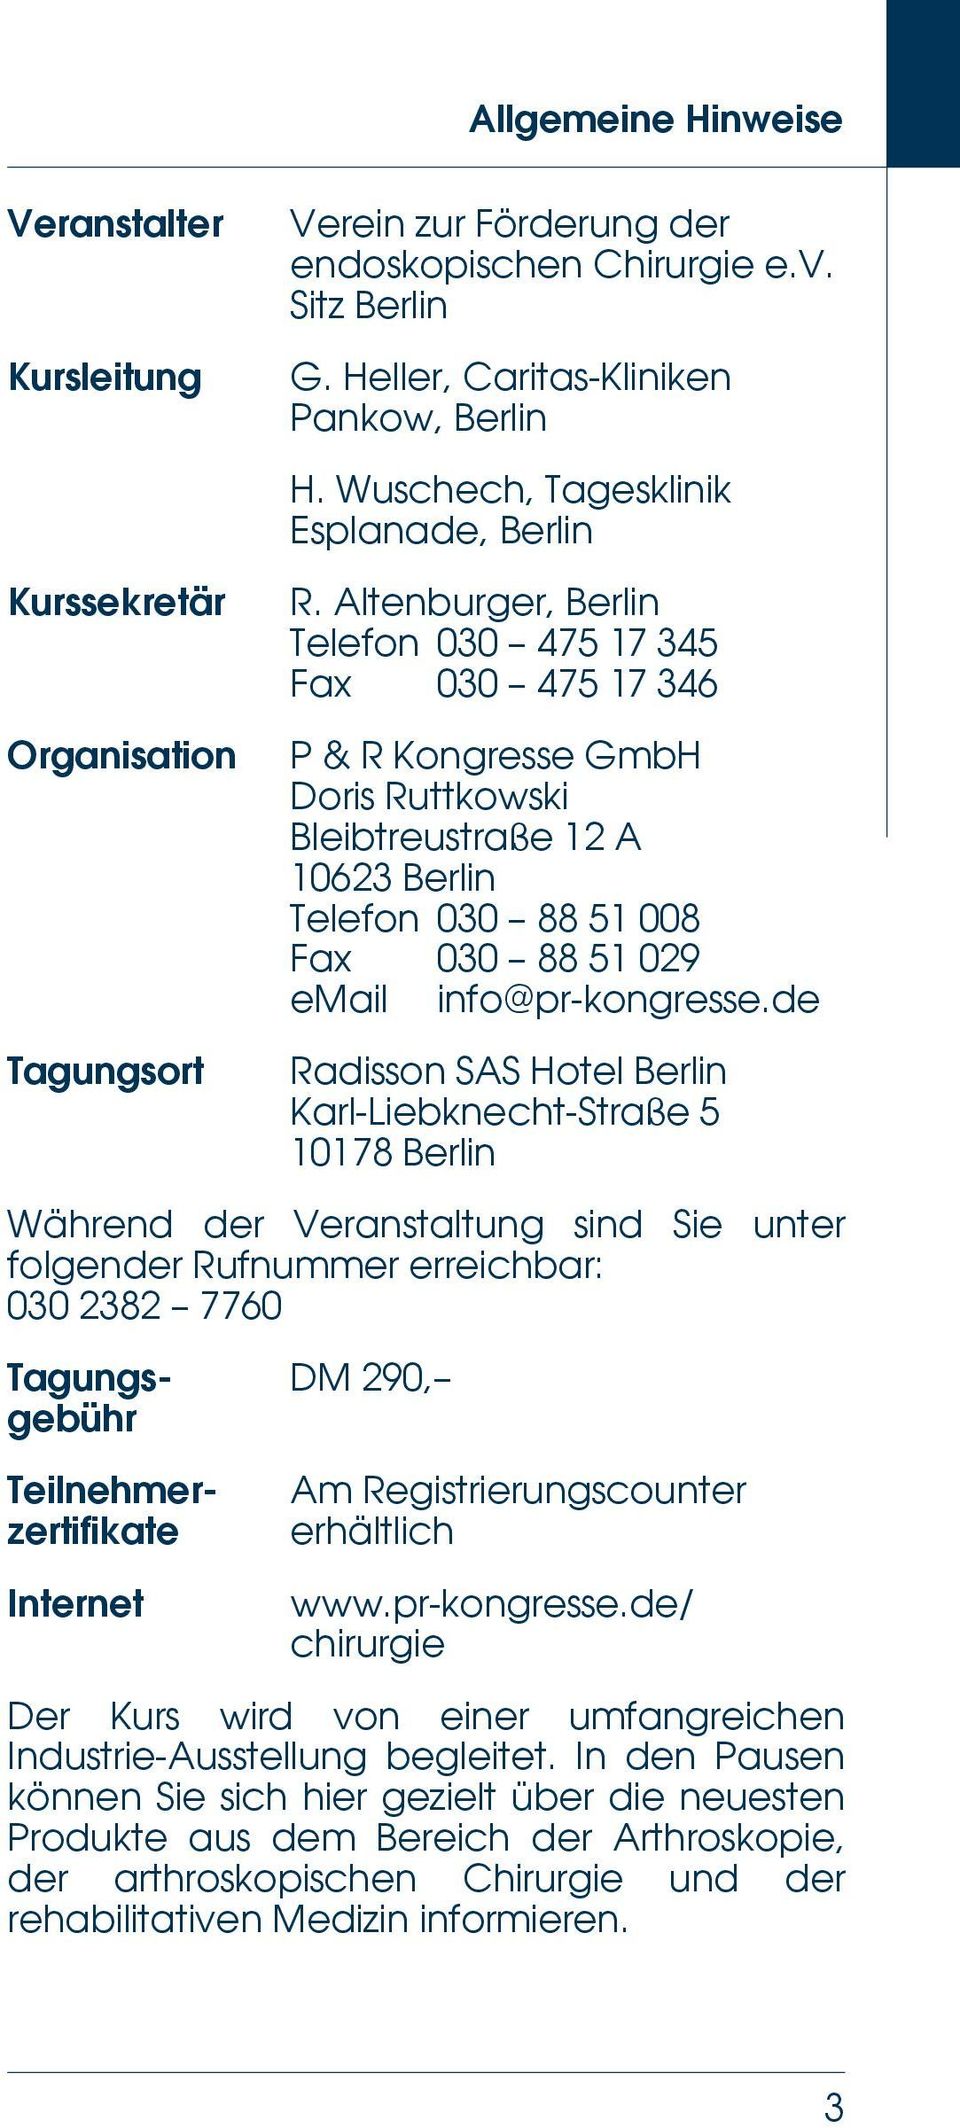 Altenburger, Telefon 030 475 17 345 Fax 030 475 17 346 P & R Kongresse GmbH Doris Ruttkowski Bleibtreustraße 12 A 10623 Telefon 030 88 51 008 Fax 030 88 51 029 email info@pr-kongresse.